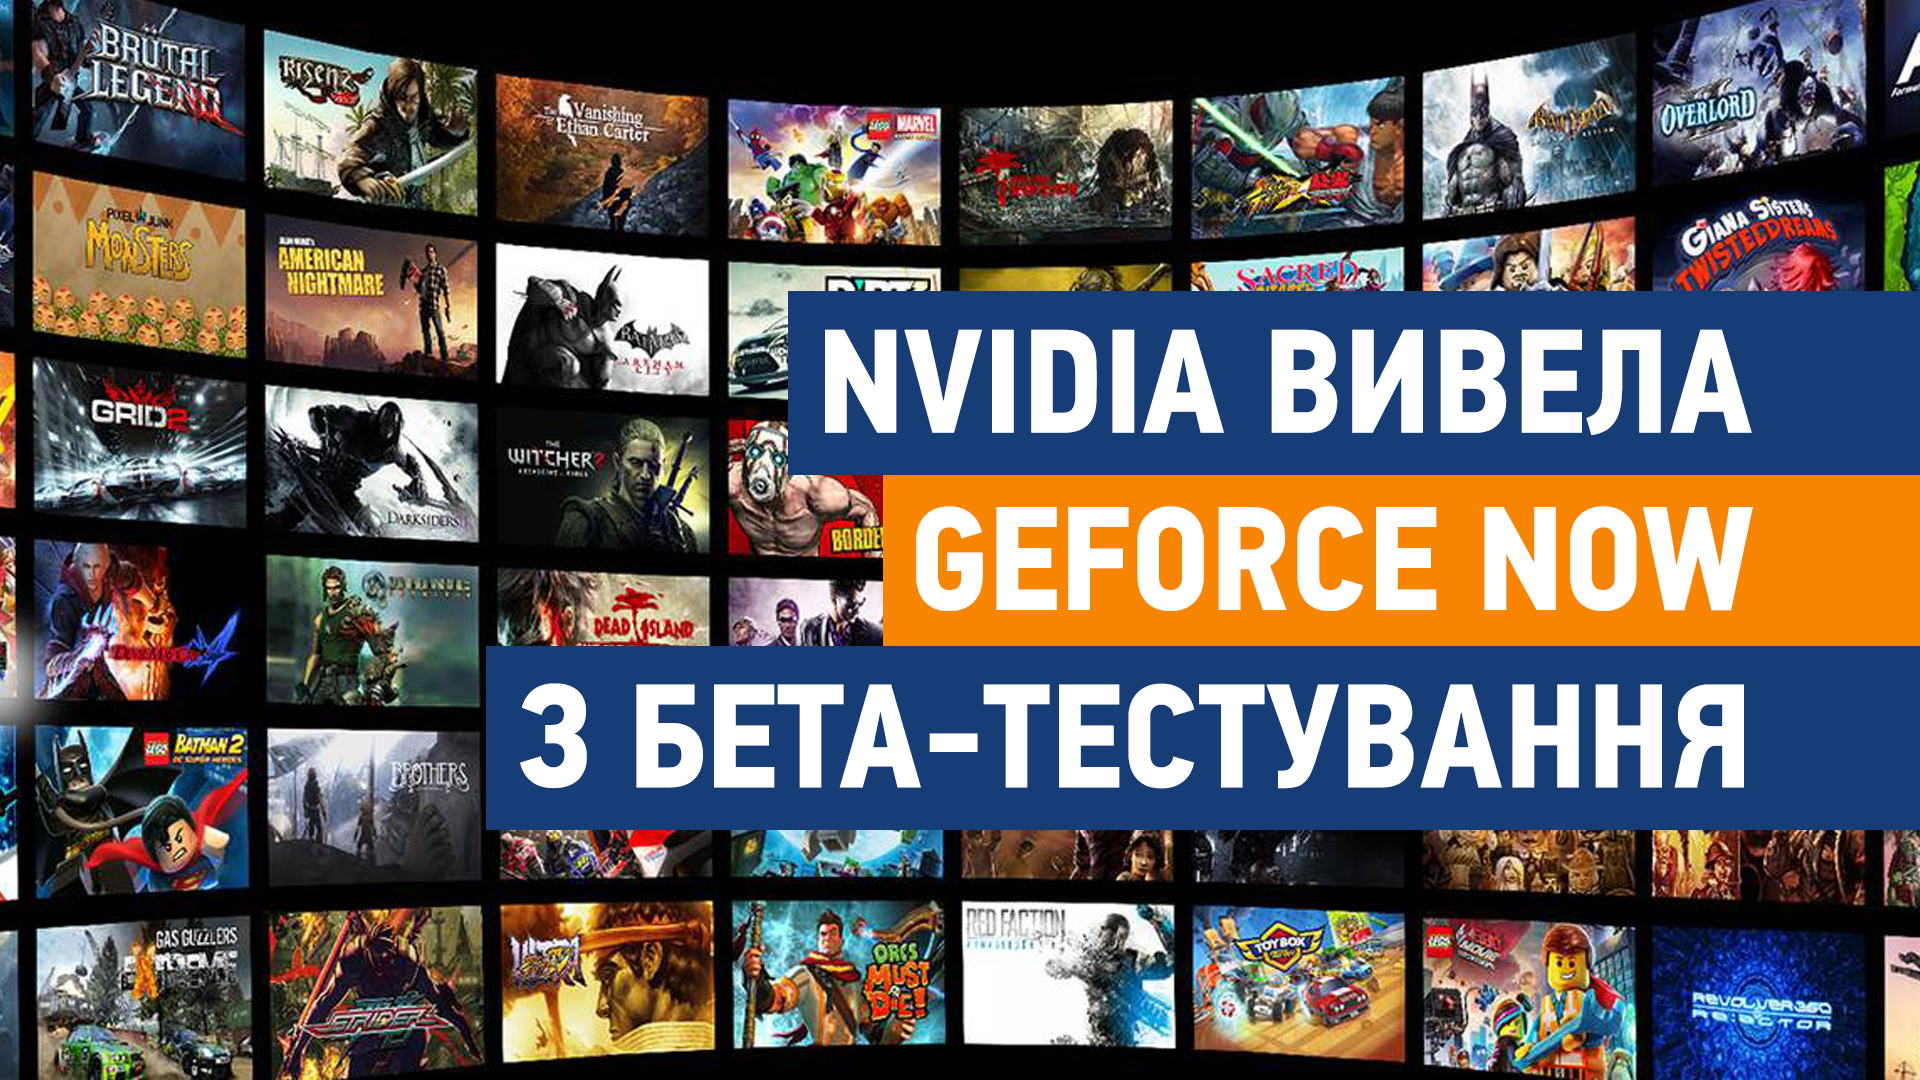 NVIDIA вивела GeForce Now з бета-тестування. Спробувати можна безкоштовно